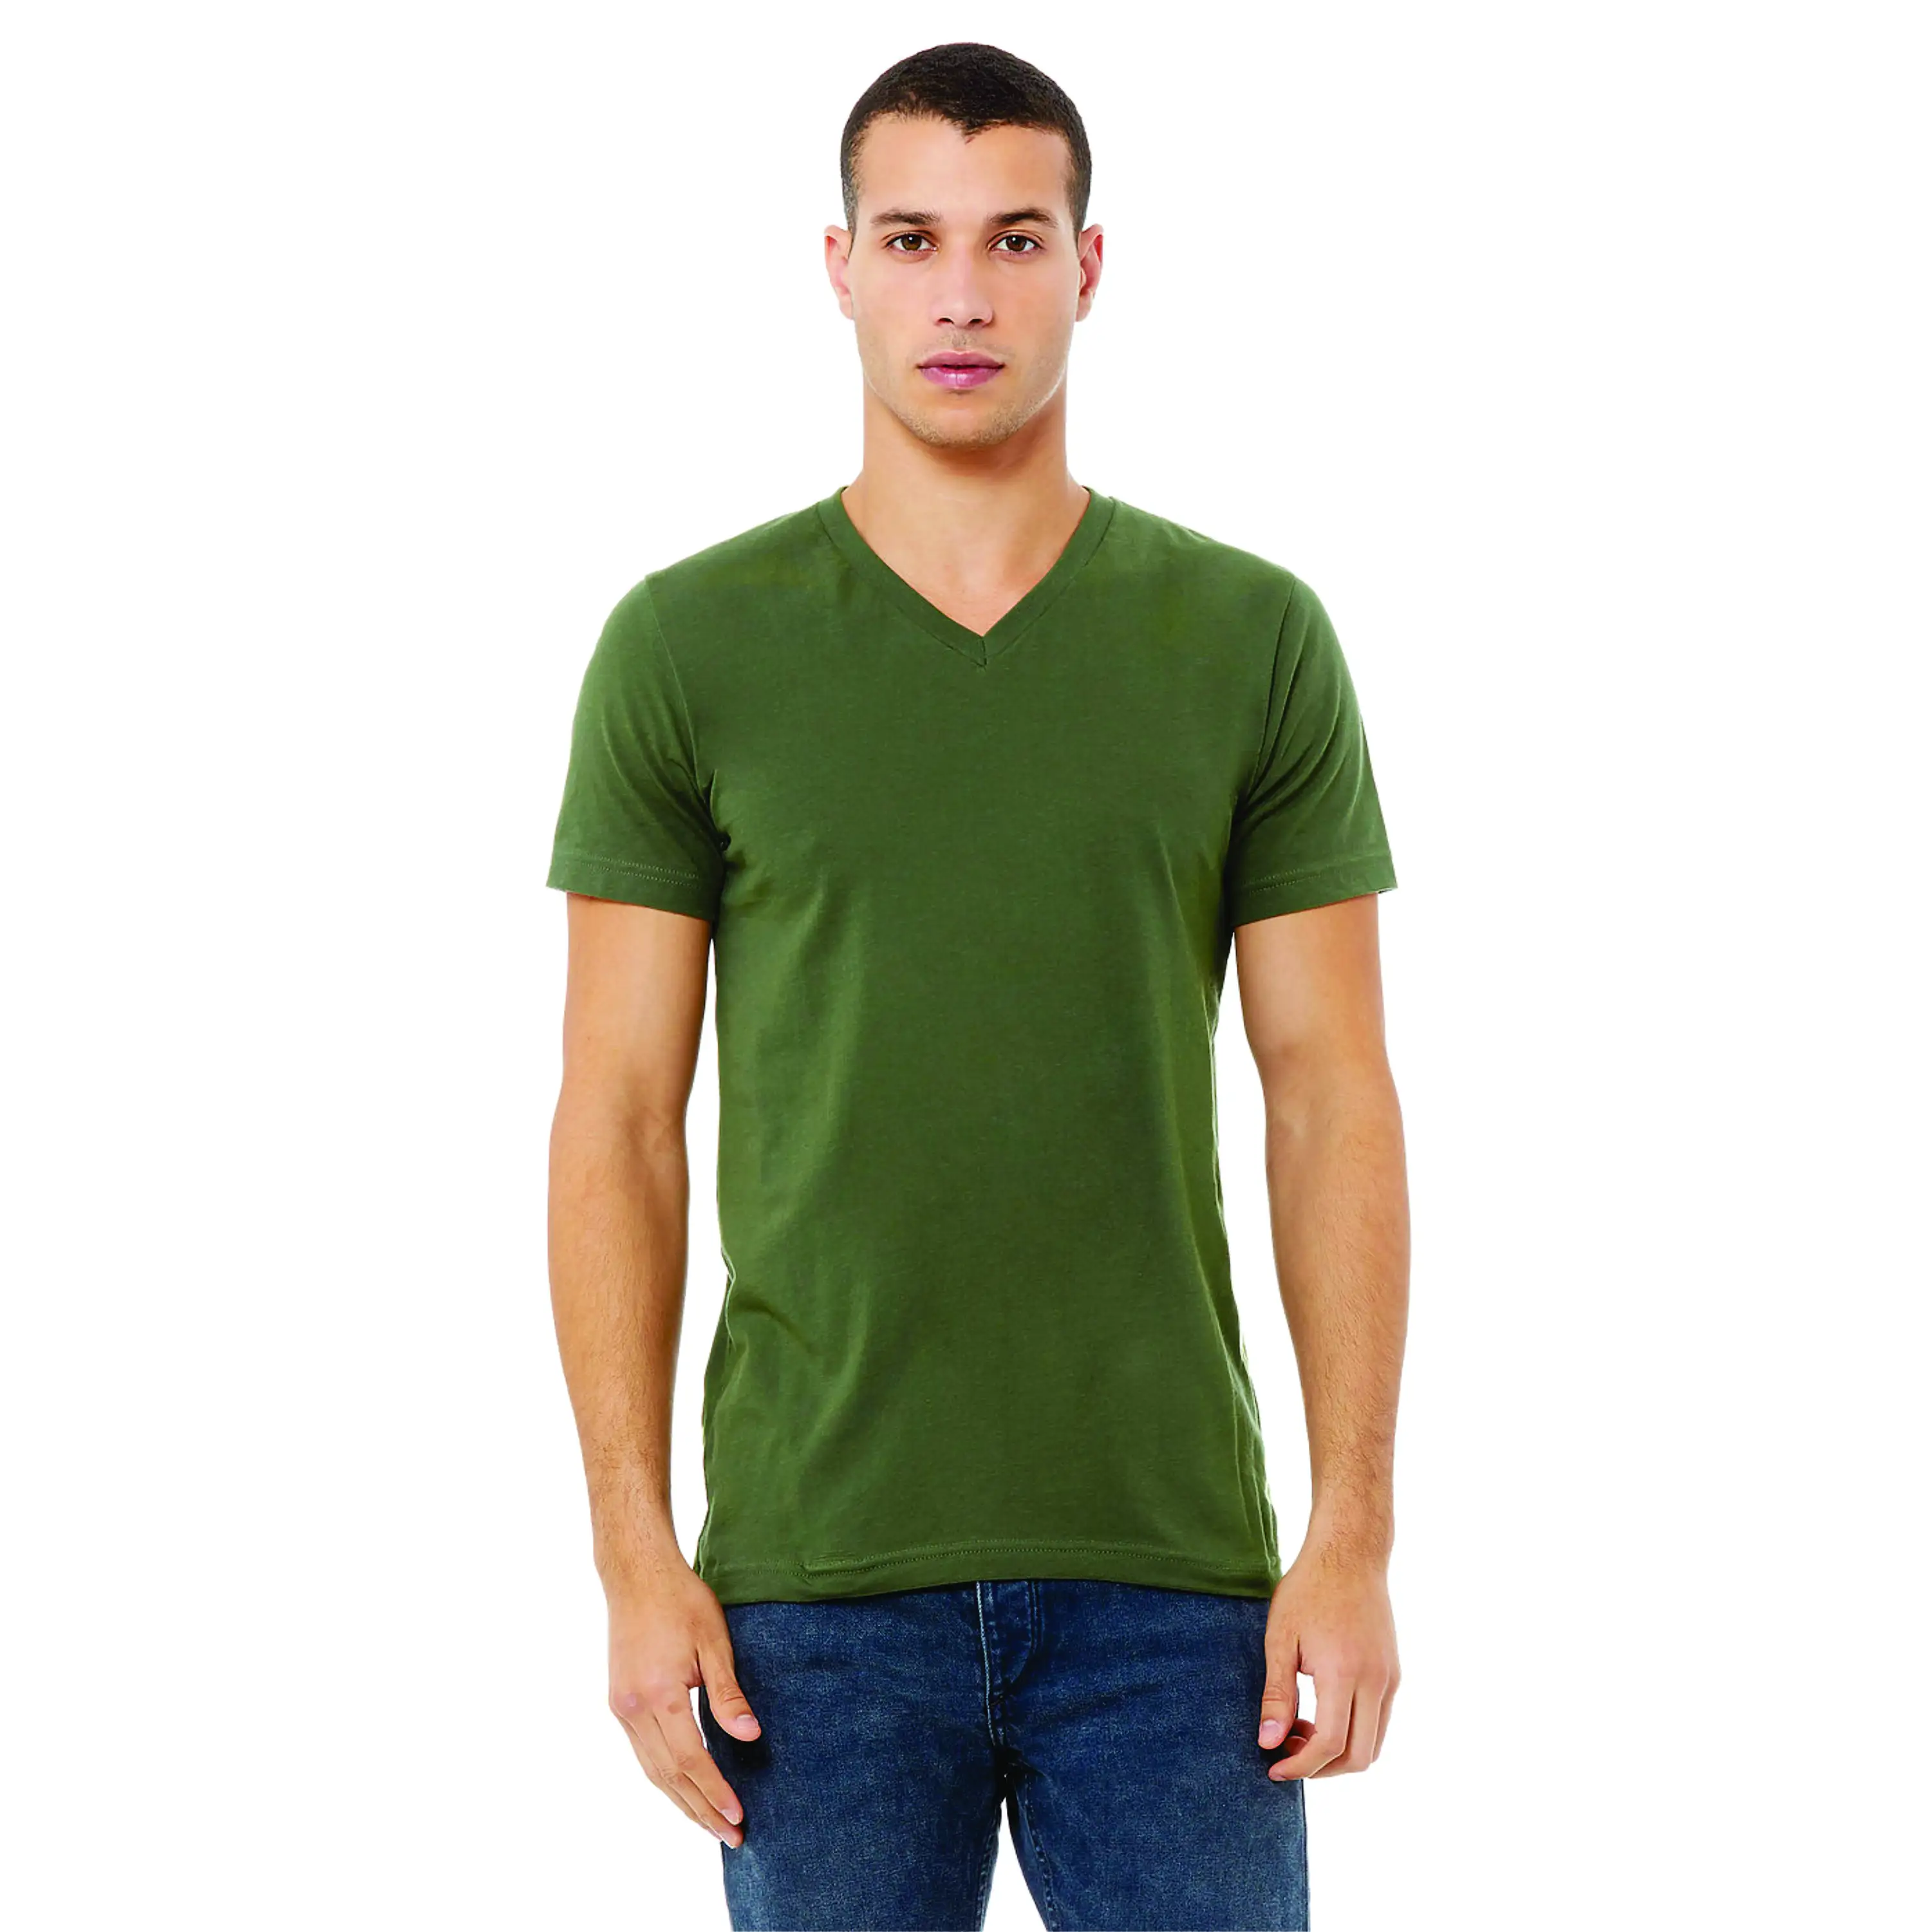 เสื้อยืดคอวีเจอร์ซีย์ unisex - สีเขียวทหาร ผ้าฝ้าย 100% Airlume 4.2 ออนซ์